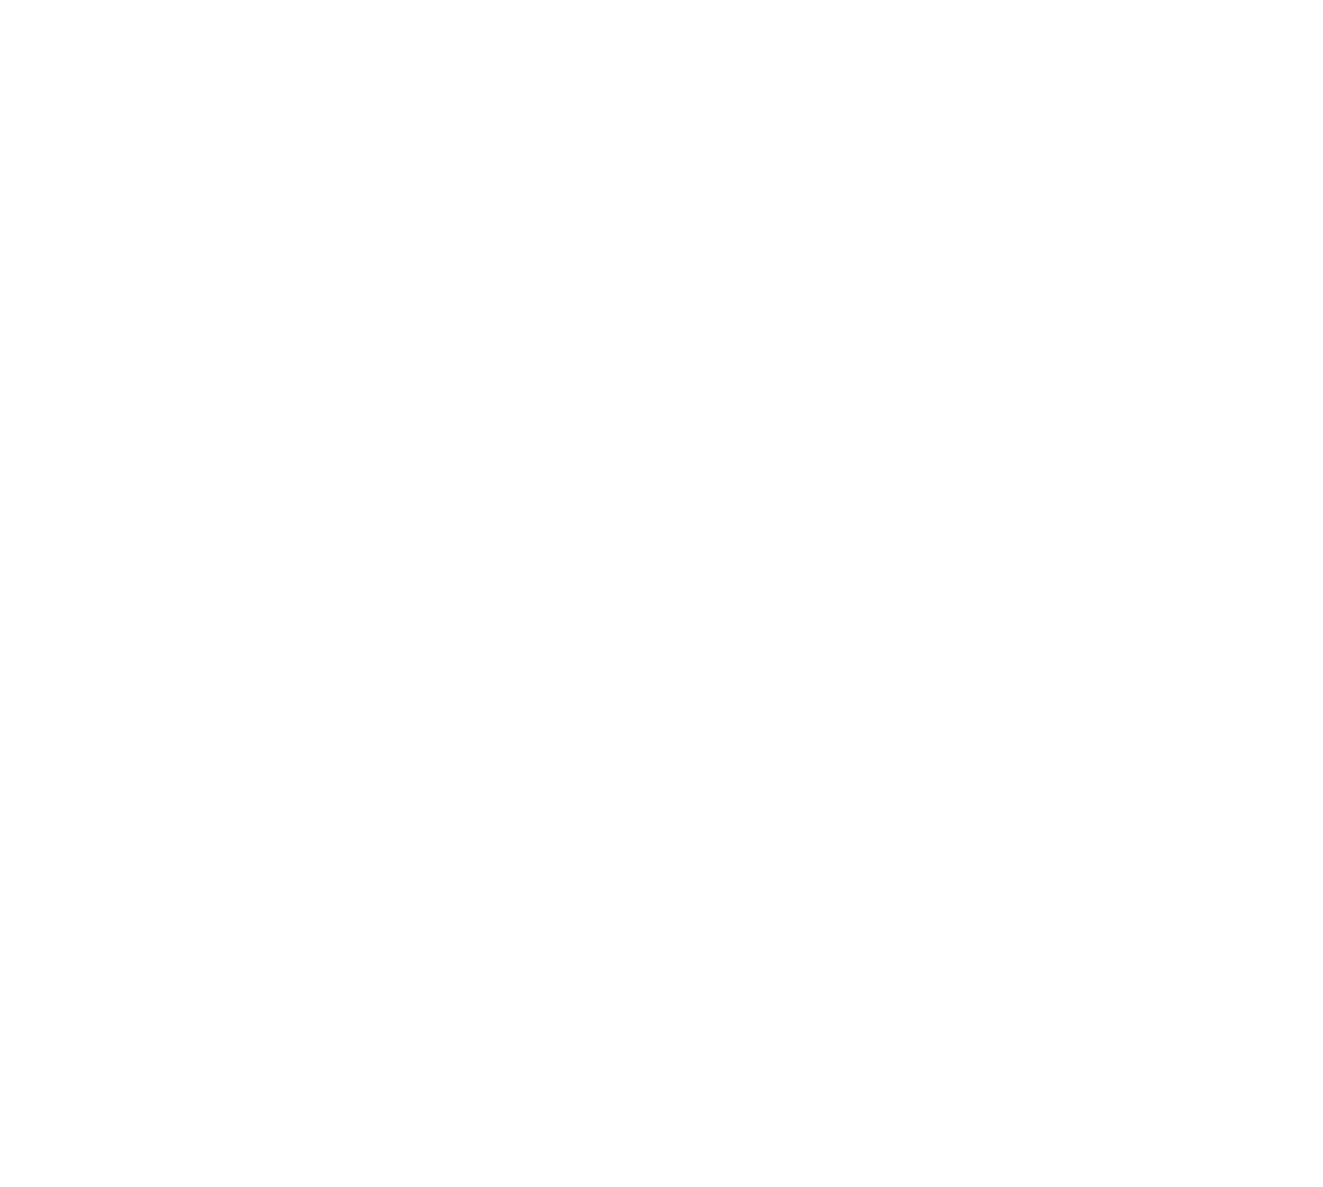 2024.6 NEW OPEN